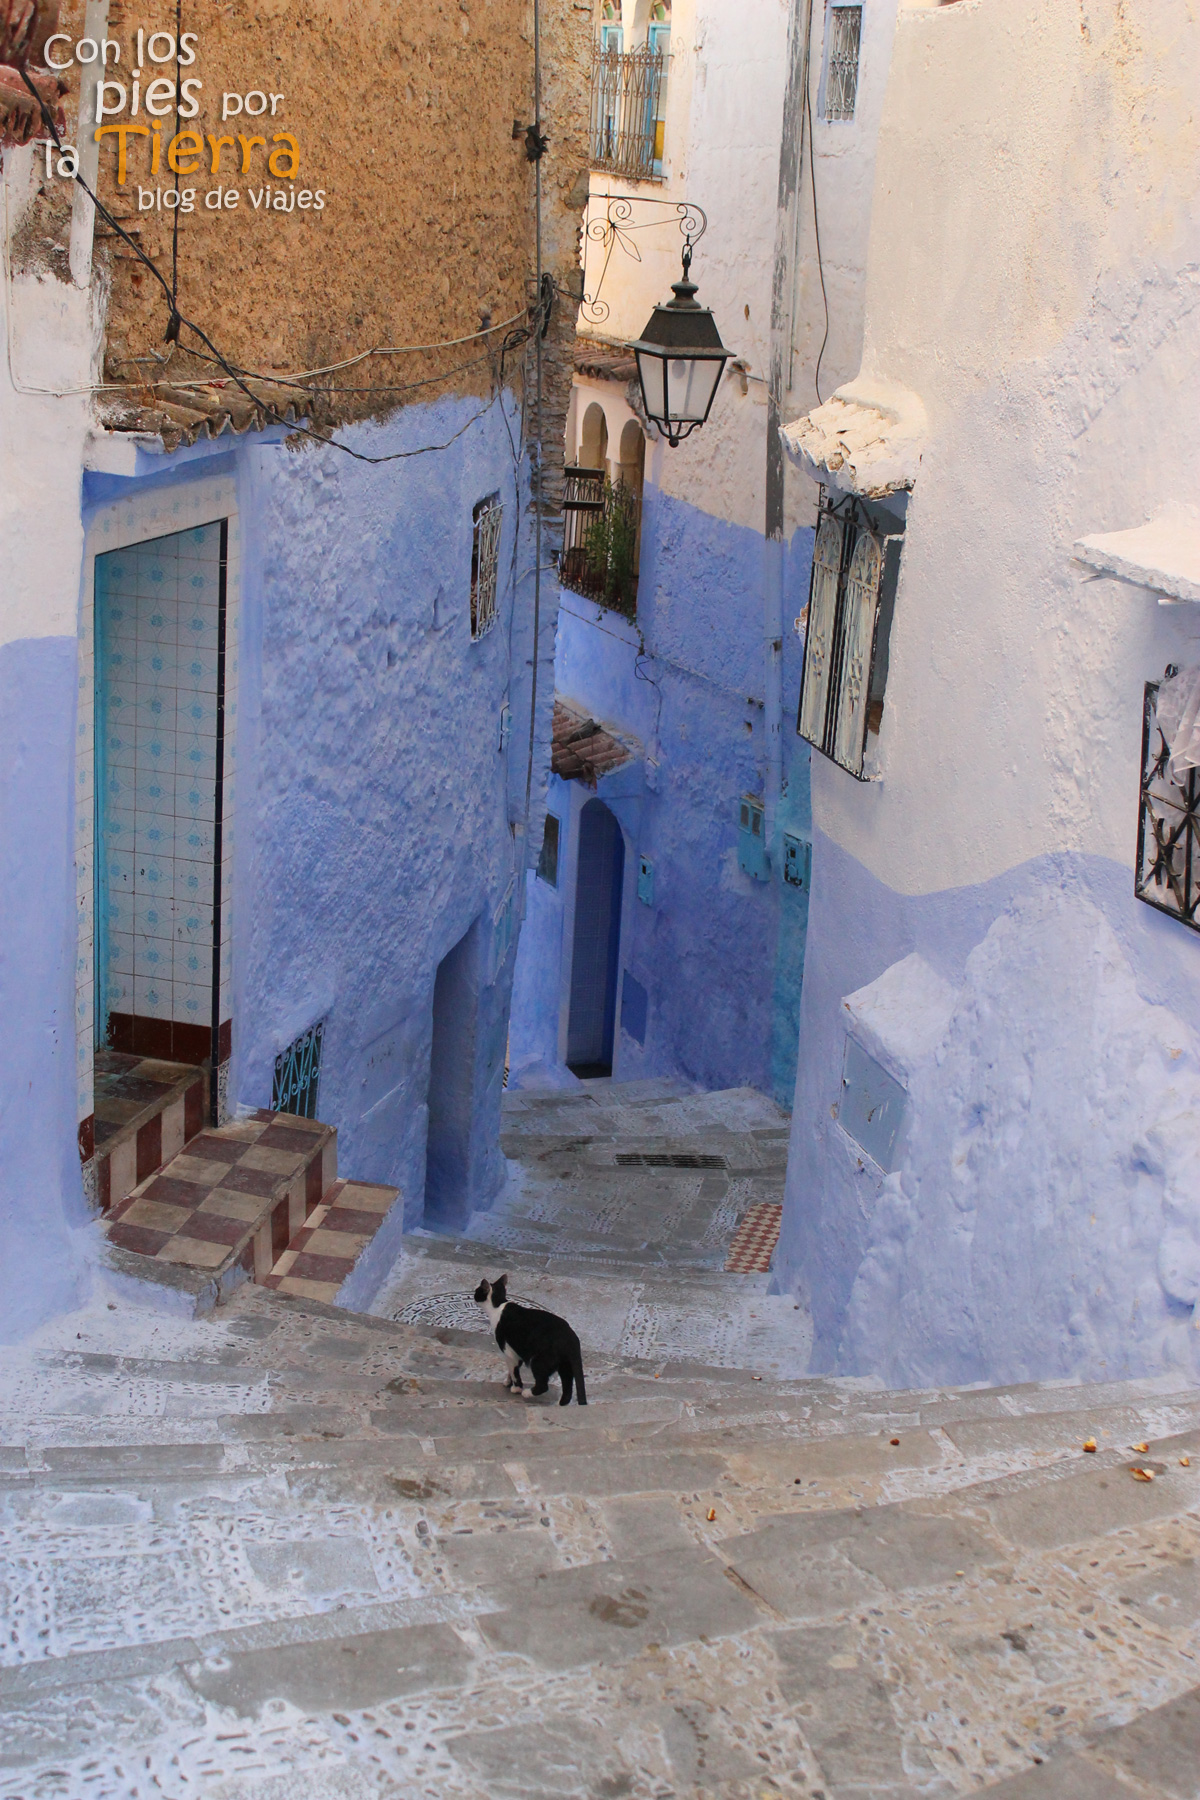 Gatos, un clásico de las imágenes marroquíes